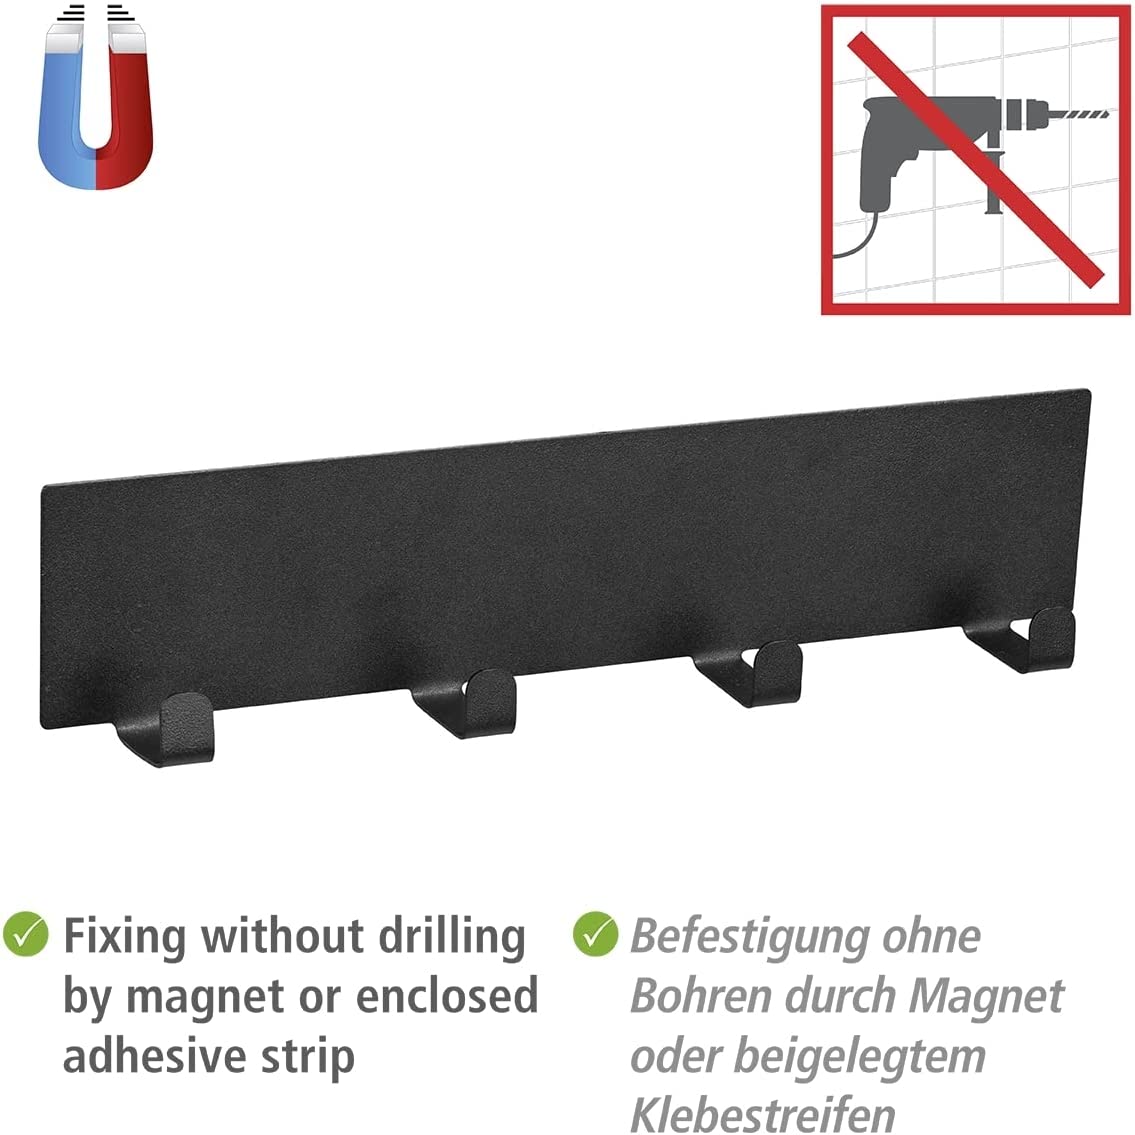 Magnetische Hakenleiste Ima Schwarz, Black Outdoor Kitchen Zubehör mit 4 Haken zum Aufhängen von Textilien und Grillzubehör, schnelle Befestigung ohne Bohren auf Metallflächen, 30 x 6,5 x 2 cm